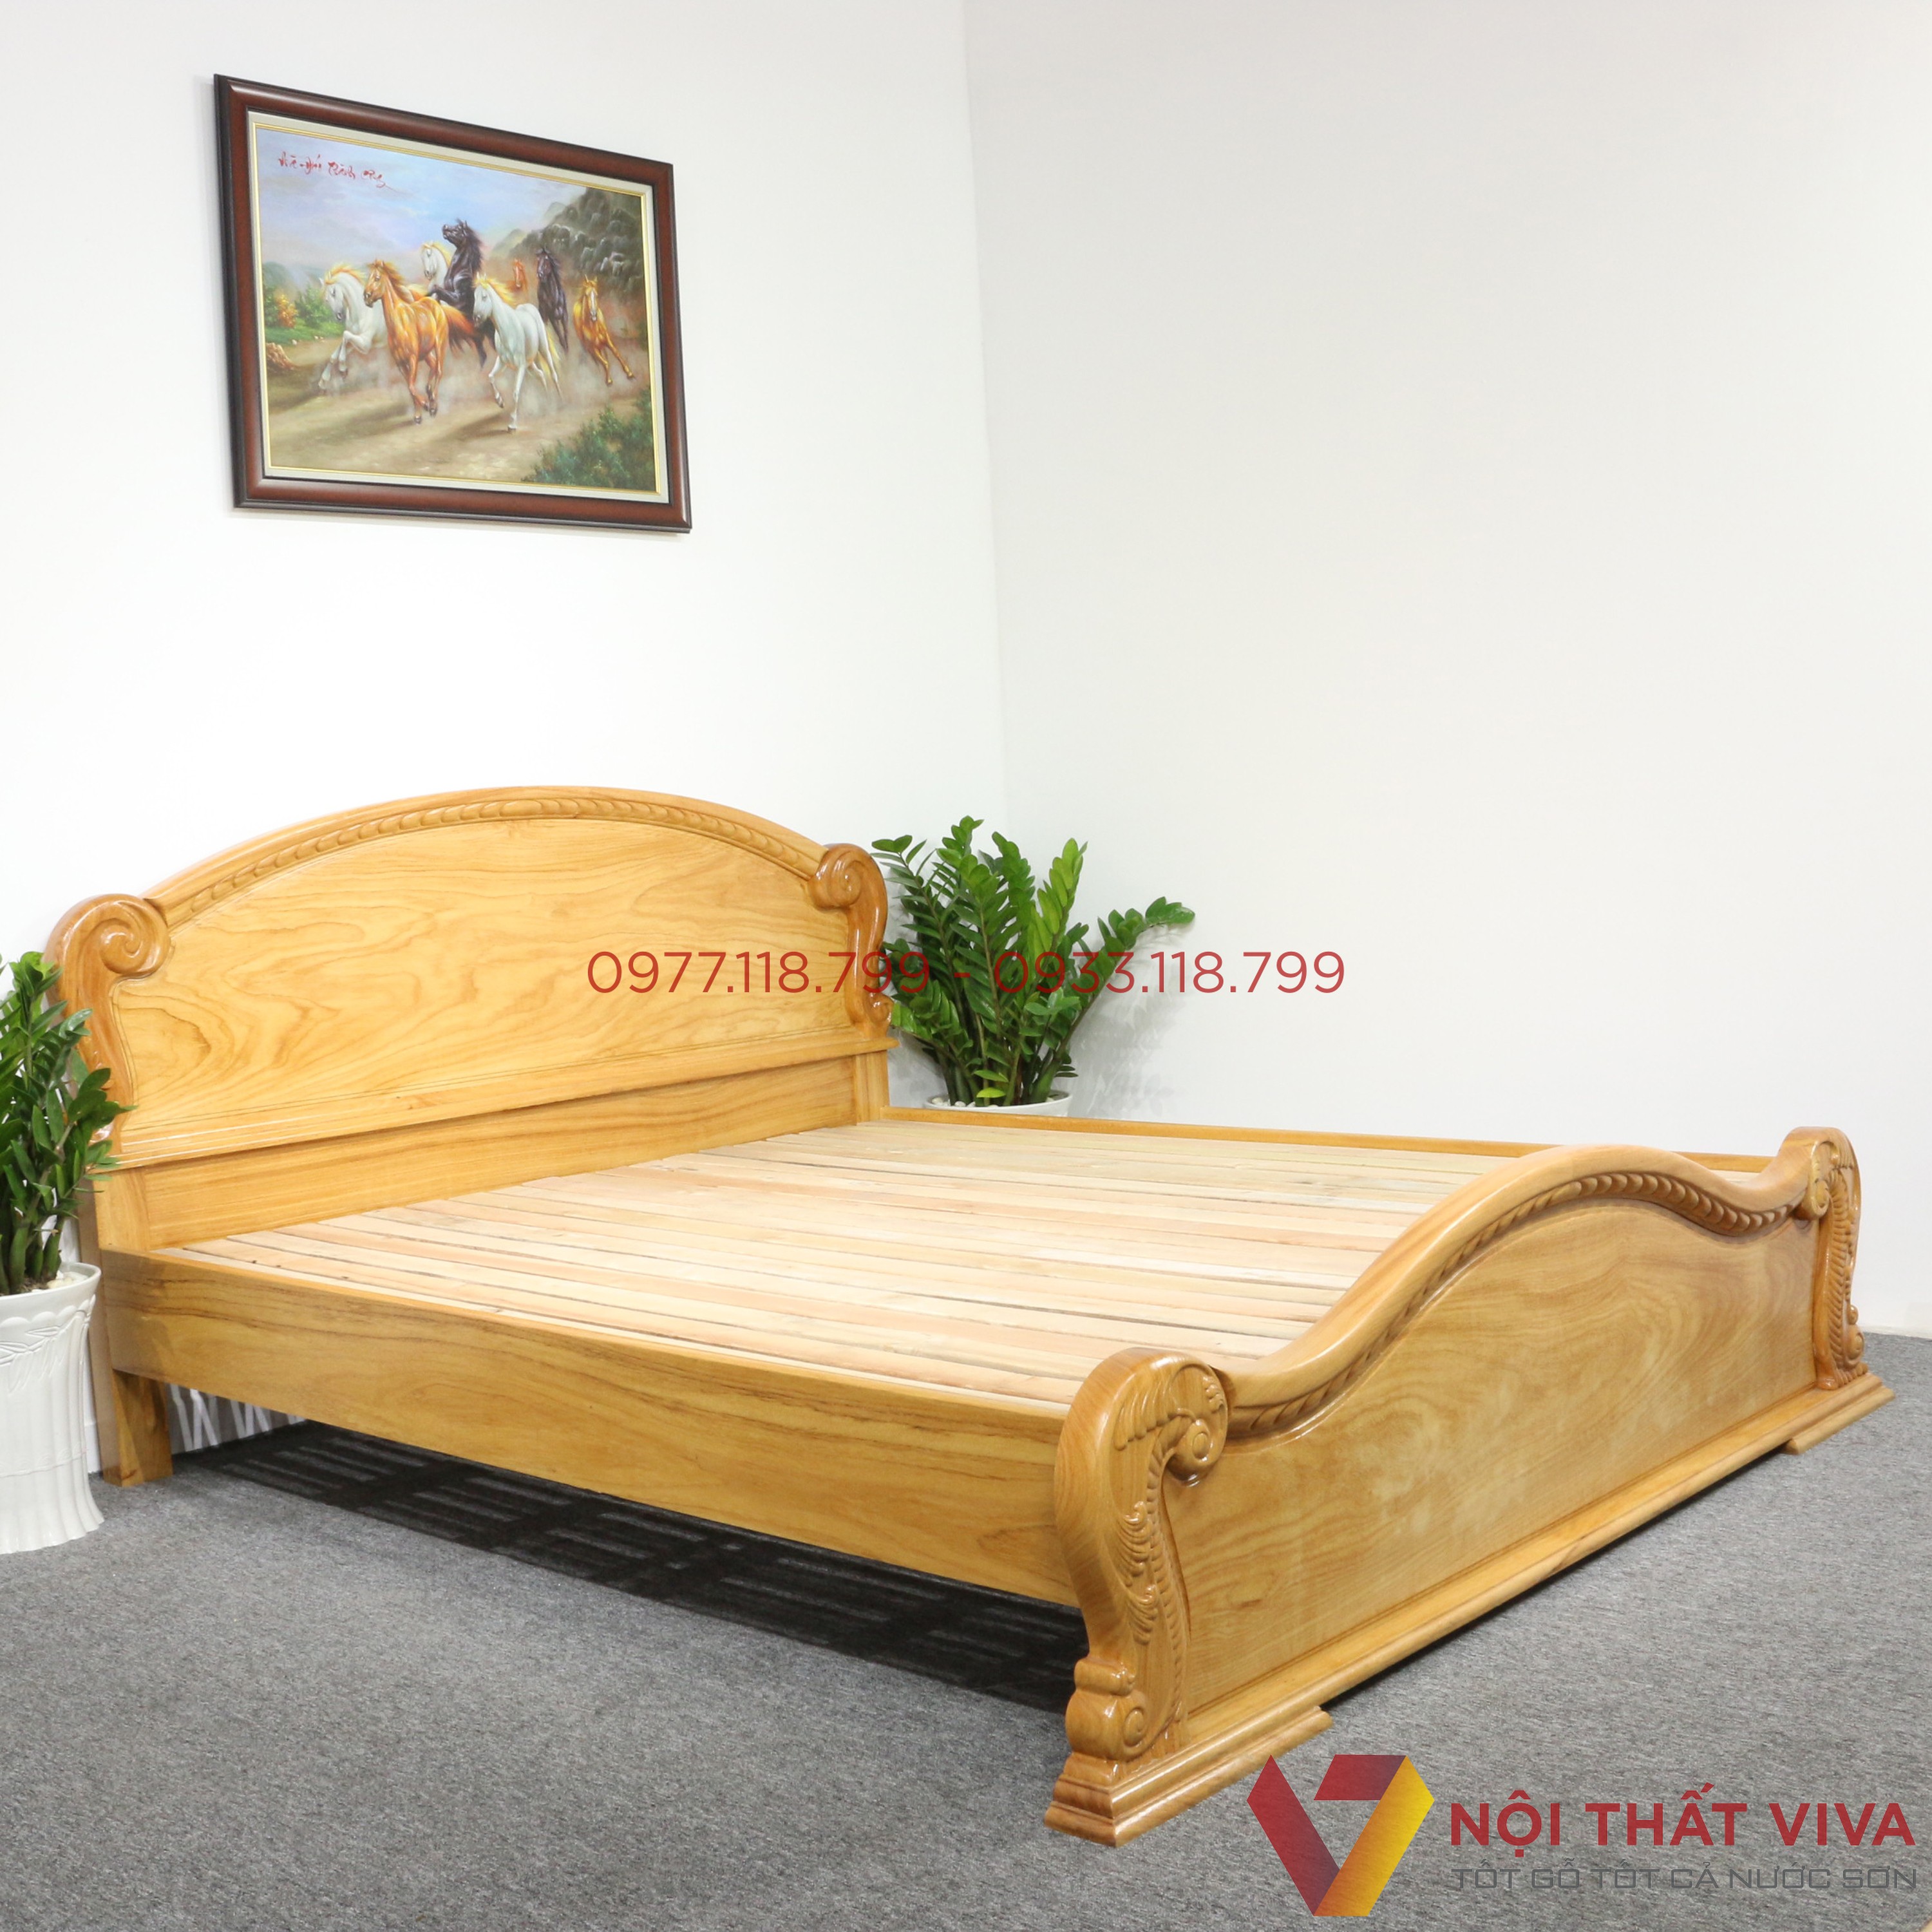 Top những mẫu giường ngủ tân cổ điển gỗ tự nhiên đang được bán ...